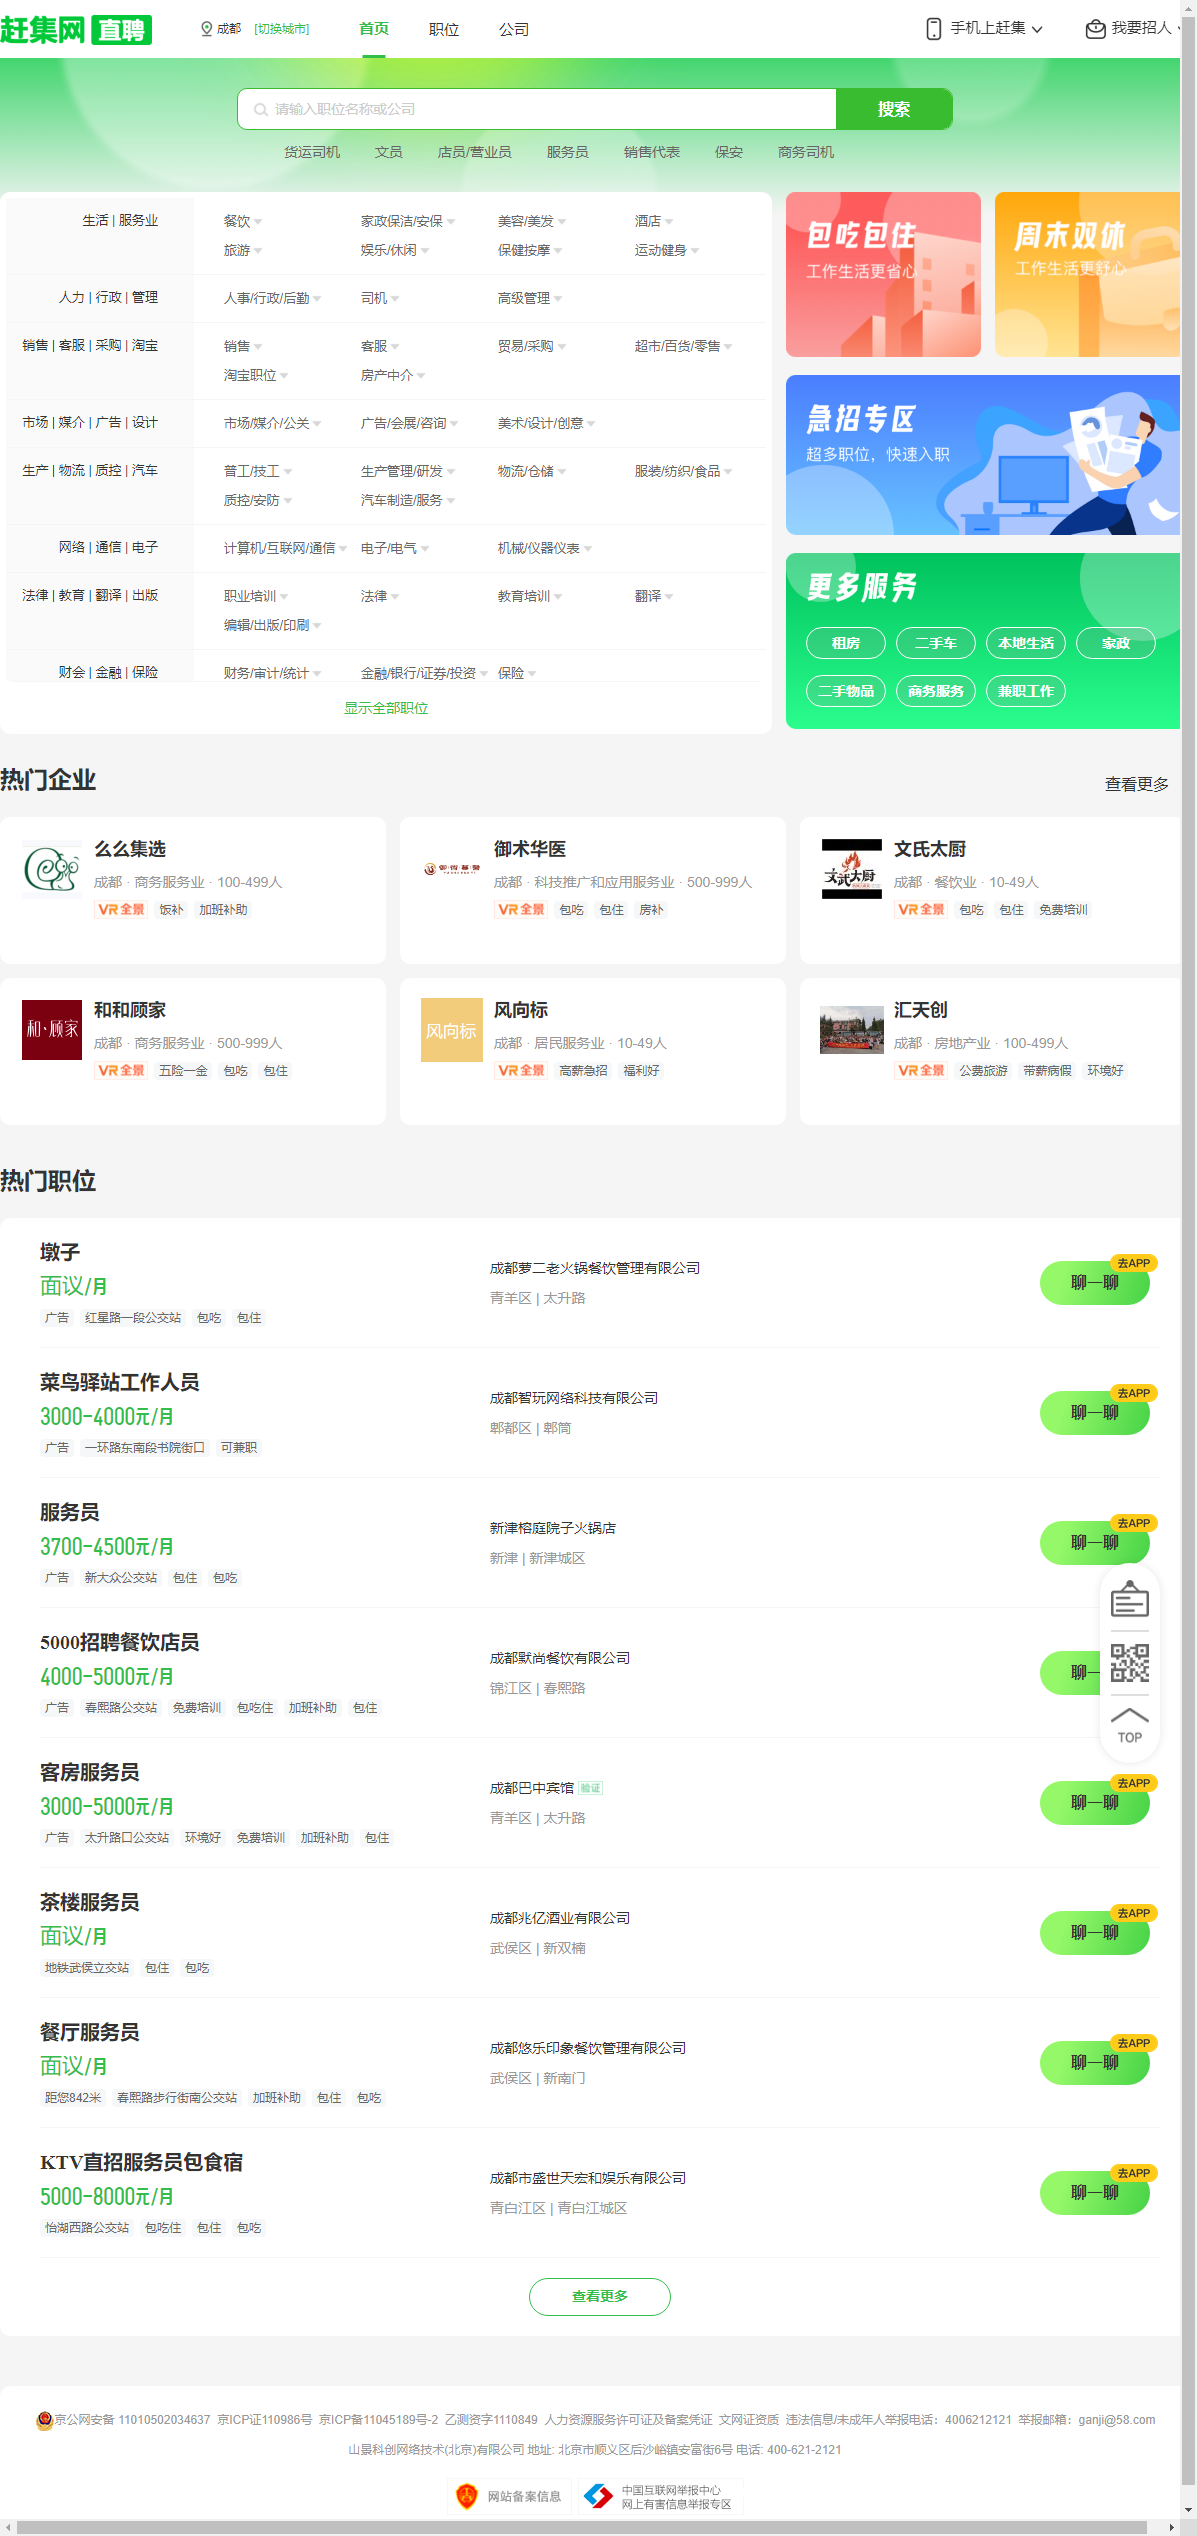 山景科创网络技术（北京）有限公司网站案例